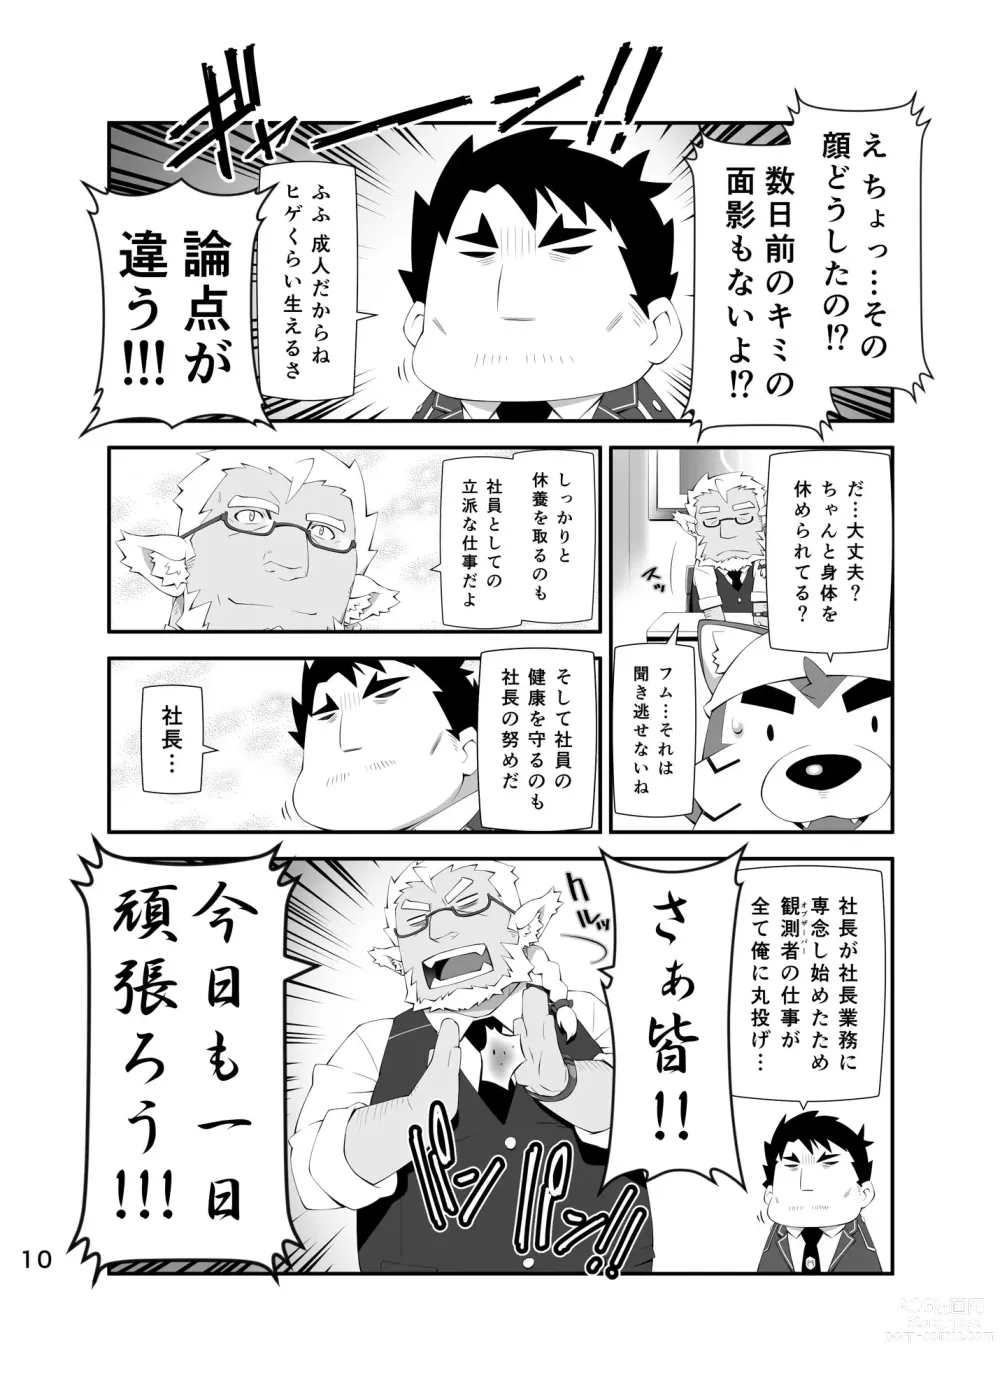 Page 9 of doujinshi LIVE AH ERO